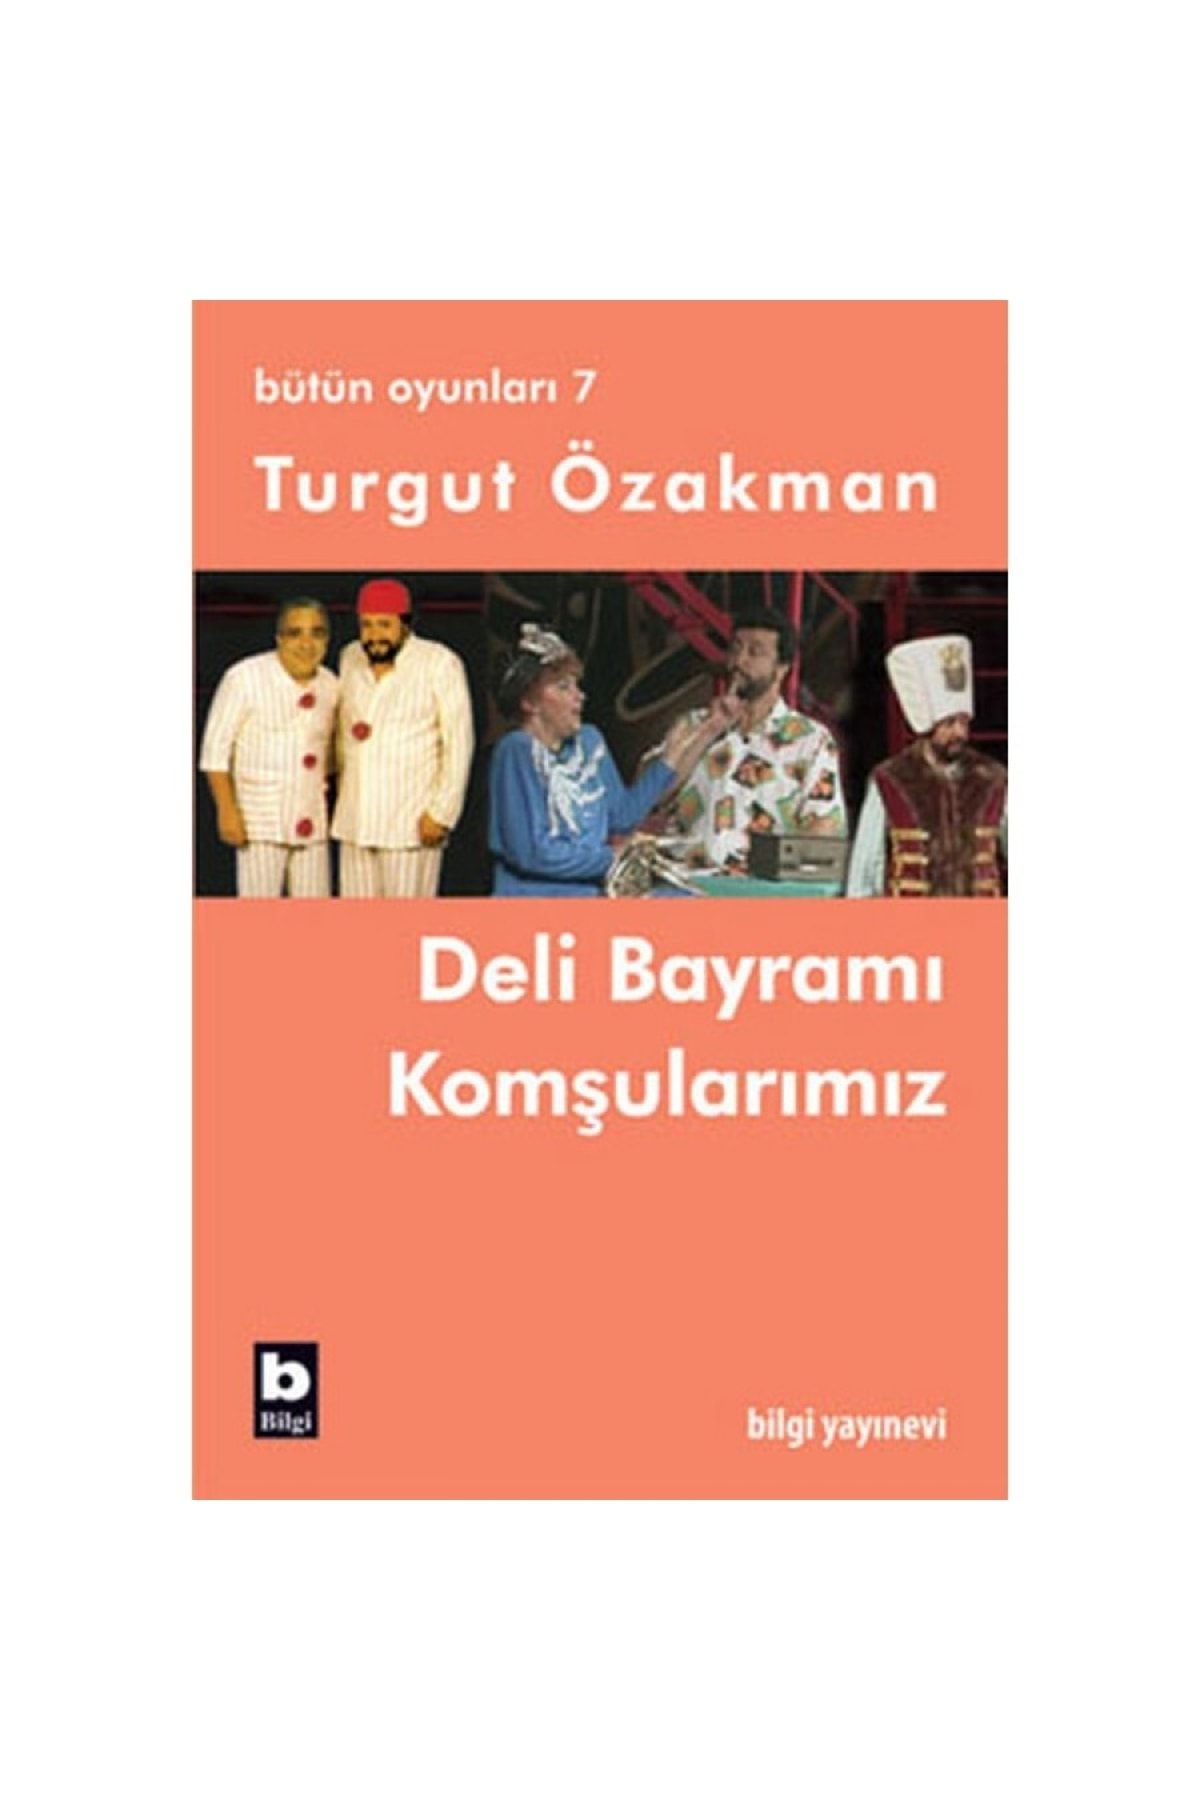 Bilgi Yayınları Deli Bayramı / Komşularımız (bütün Oyunları-7) Turgut Özakman